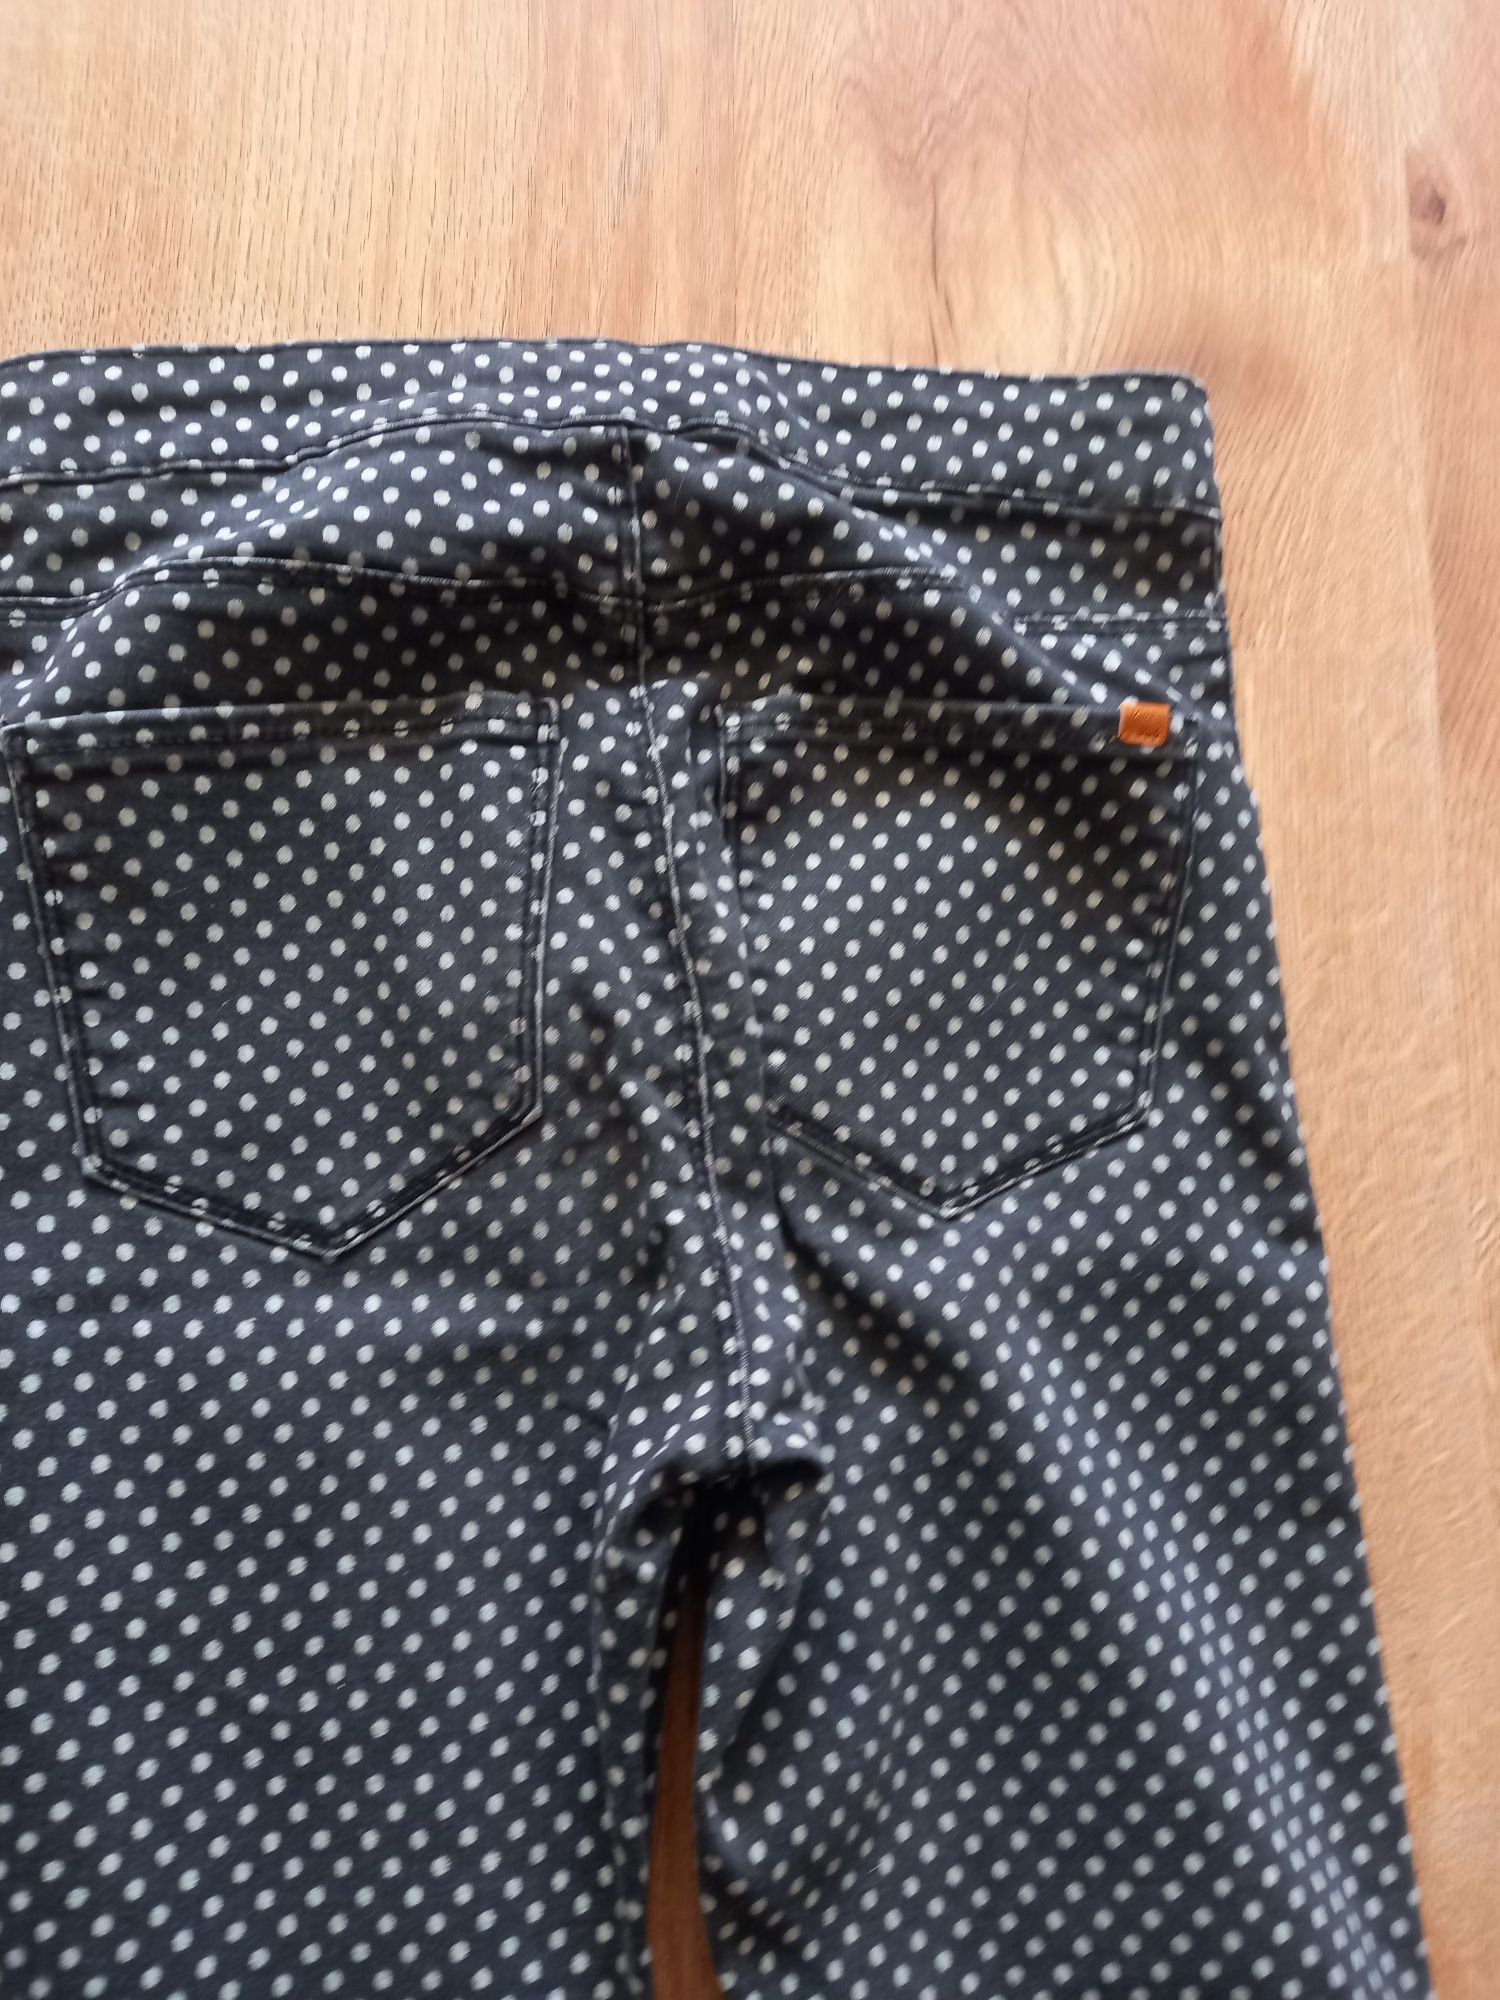 Spodnie rurki Zara r 164 st bdb